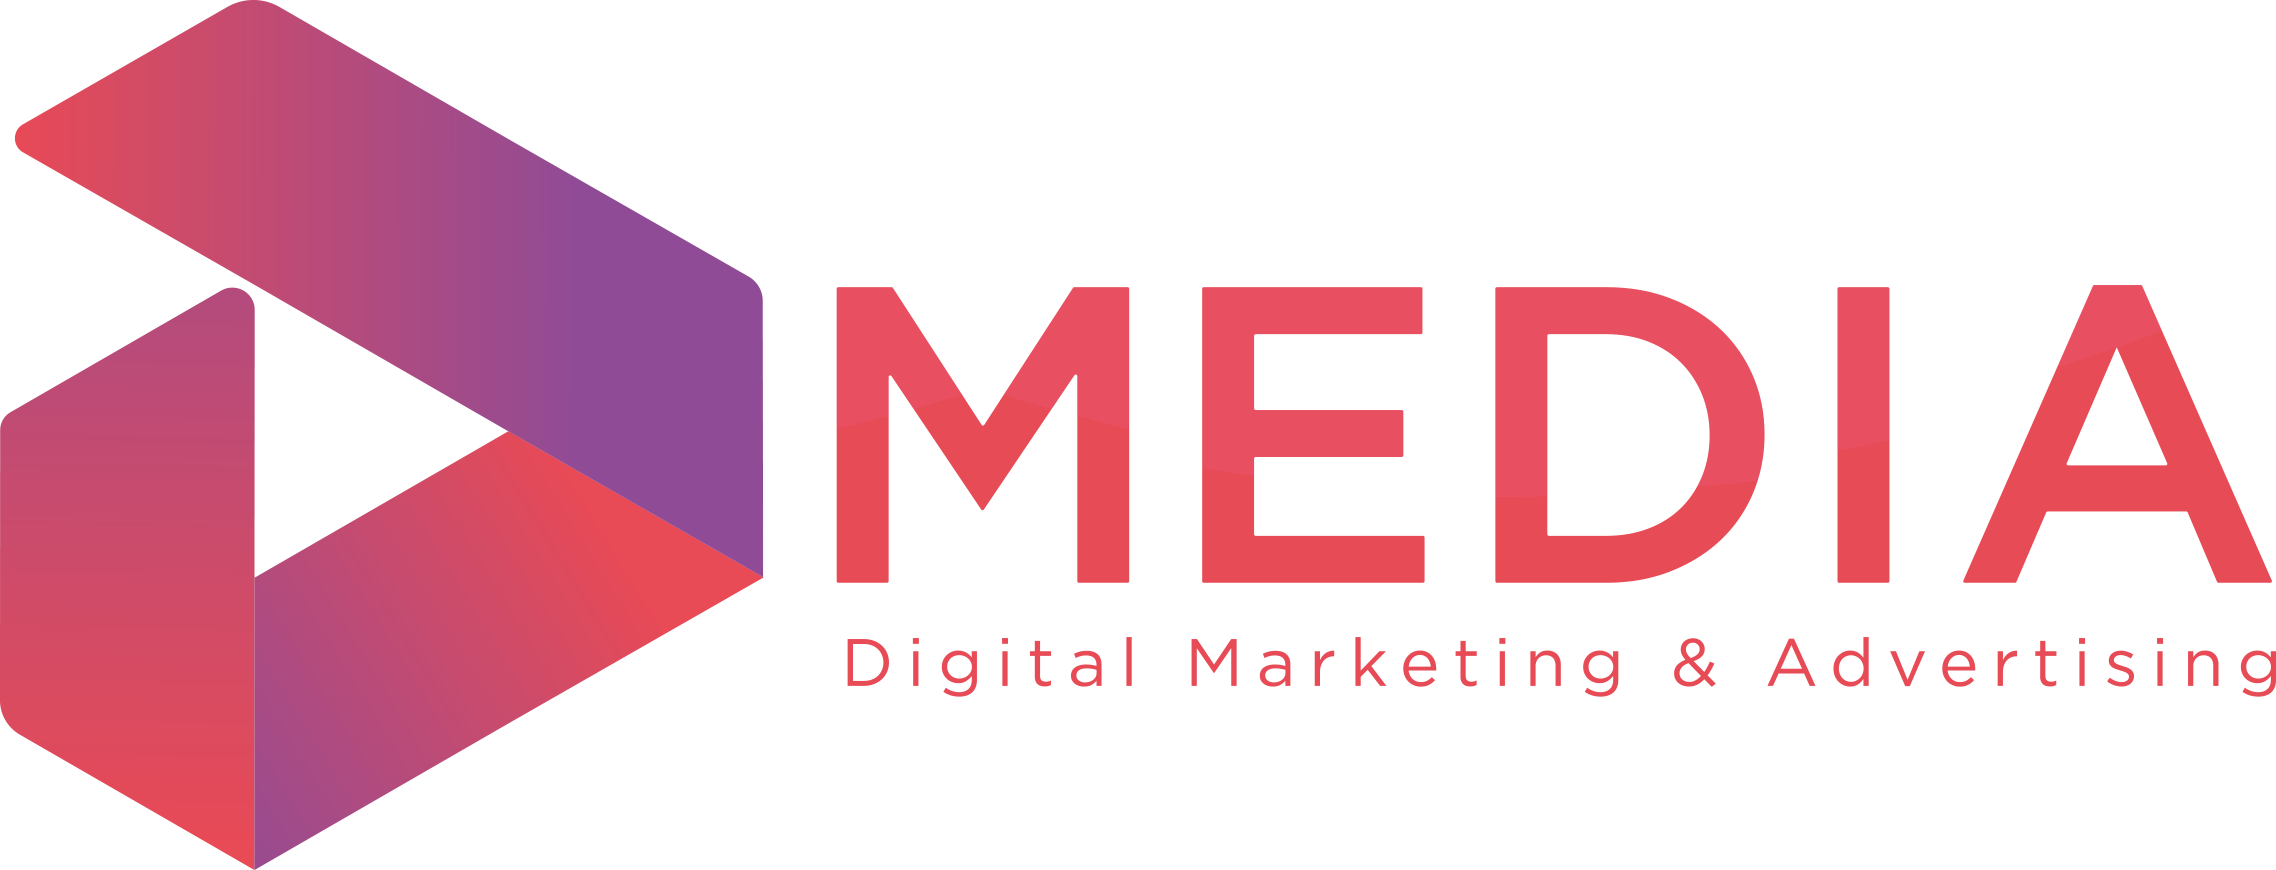 D Media Agency